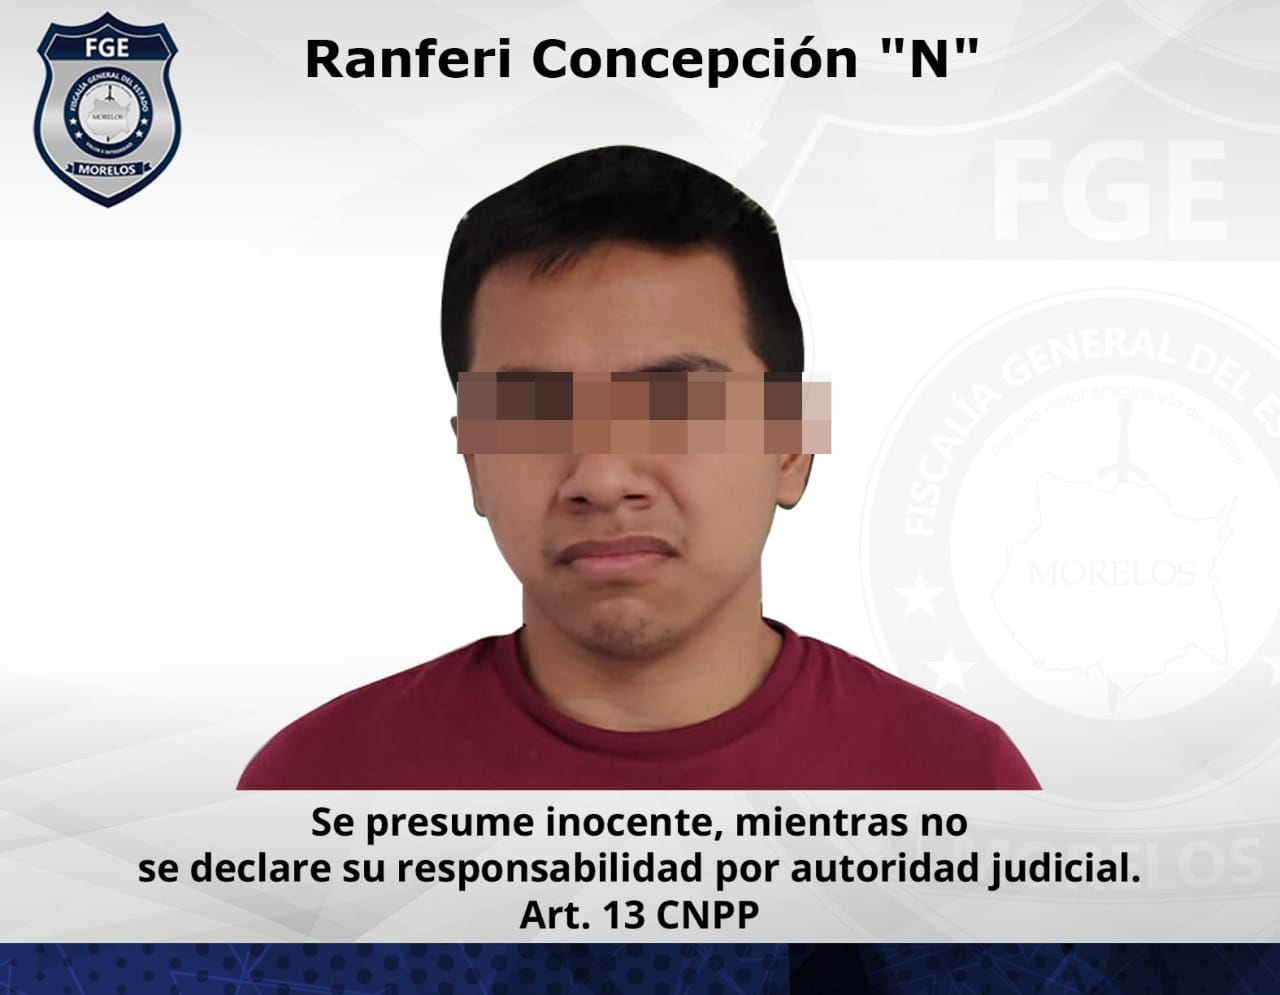 FGE detiene a Ranferi Concepción "N" por el feminicidio de Laura Janet de 19 años en Tetecala. El agresor era su novio 